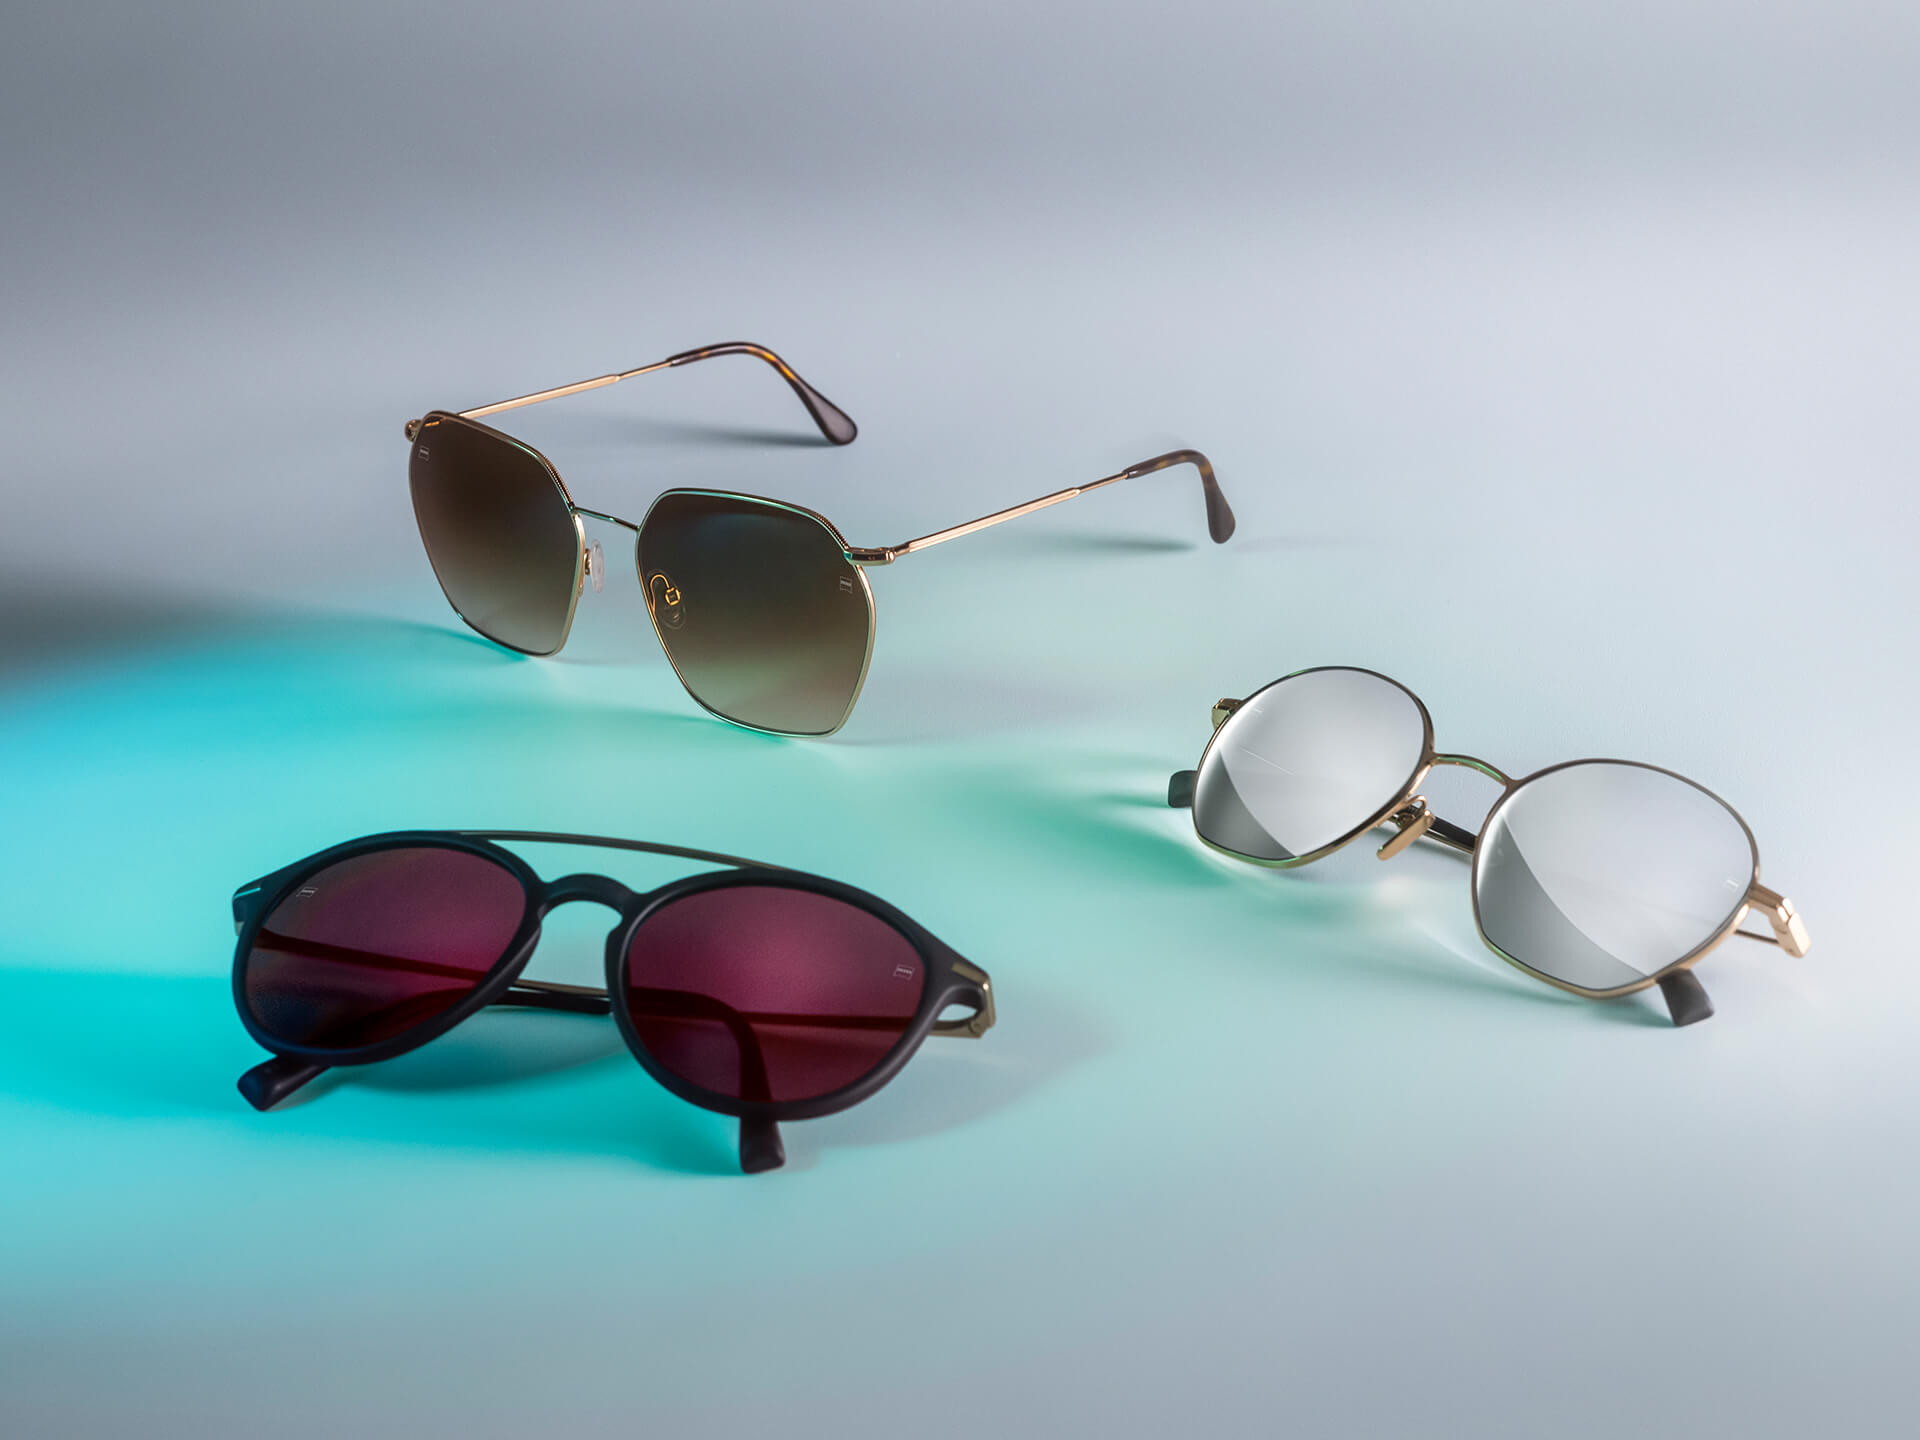 Drie zonnebrillen met verschillend gekleurde ZEISS brillenglazen, voorzien van DuraVision Sun, DuraVision Mirror en Flash Mirror coatings, zichtbaar op een witte achtergrond met blauwe lichtreflectie.